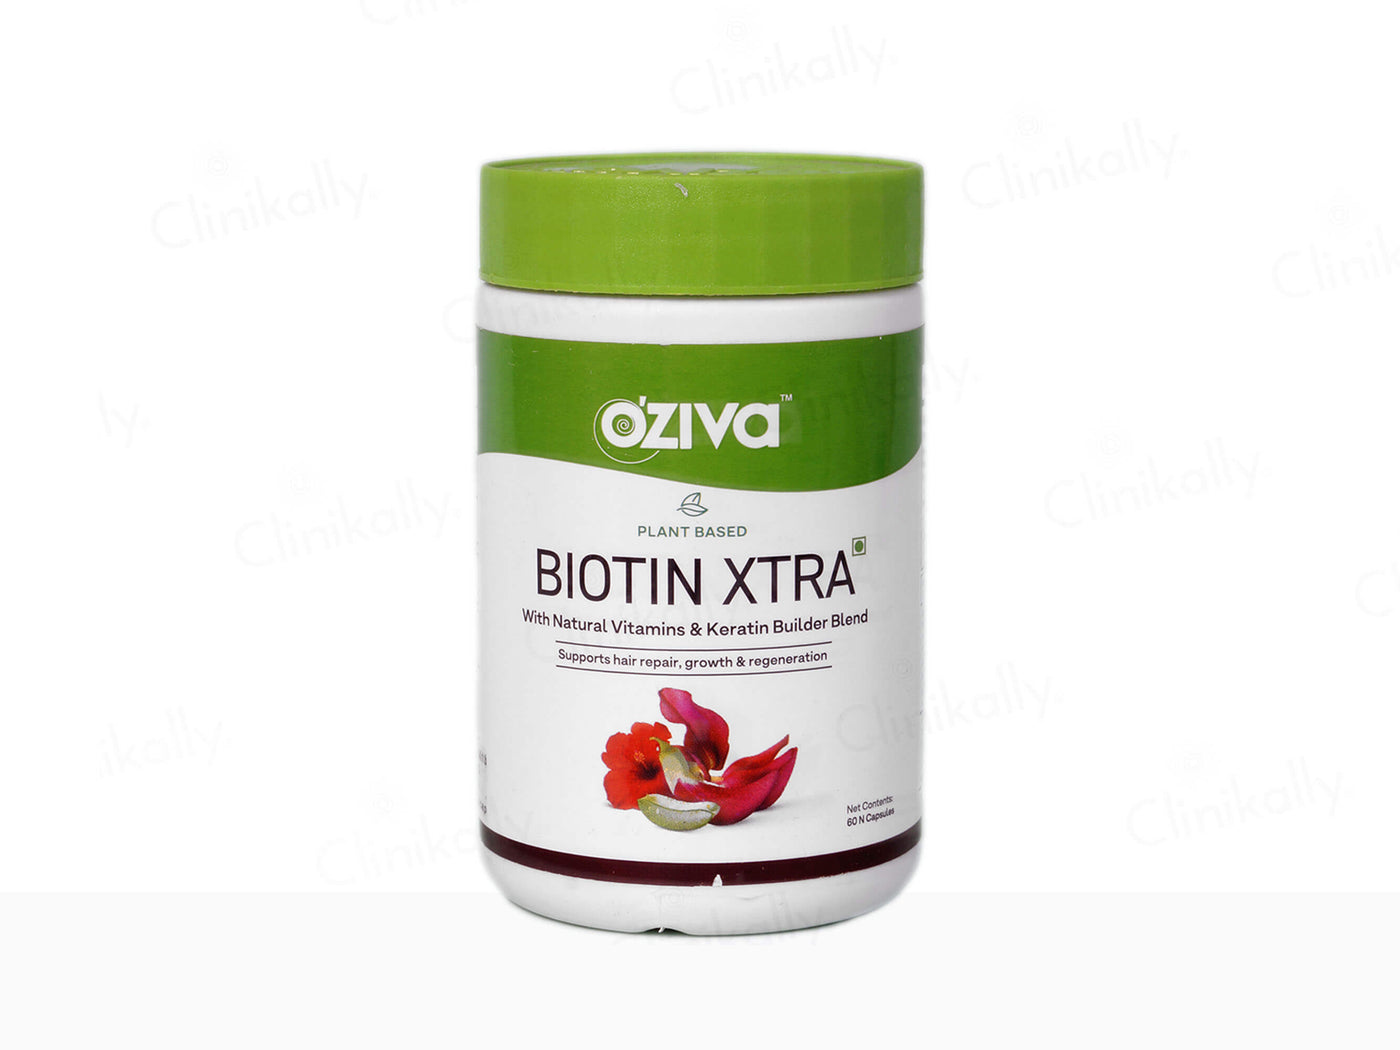 OZiva Biotin Xtra with Keratin Builder - Clinikally